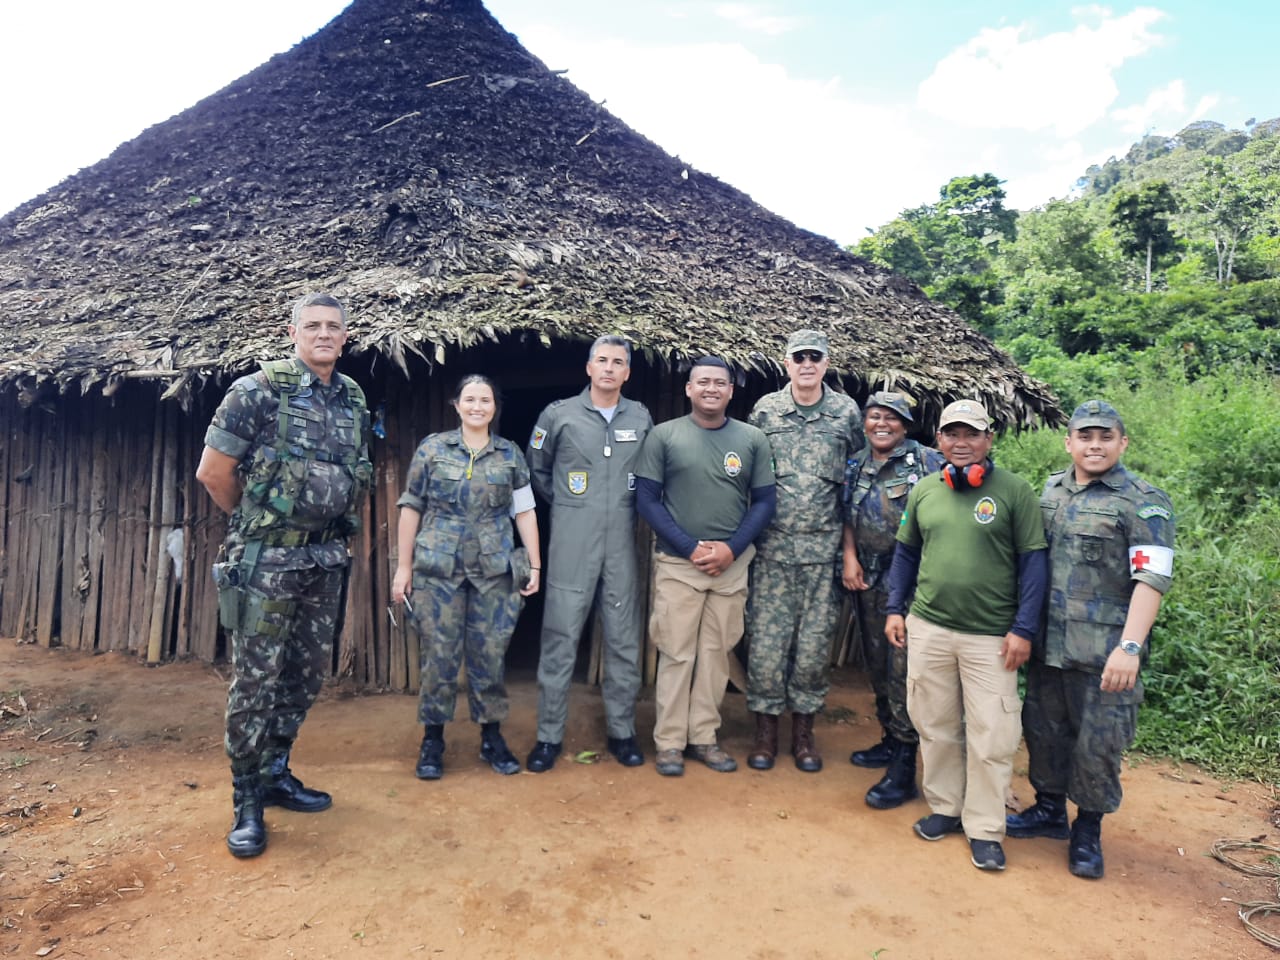 Aeronaves de carga e transporte da Força Aérea Brasileira estão atuando diariamente para atender às necessidades da comunidade indígena em Roraima